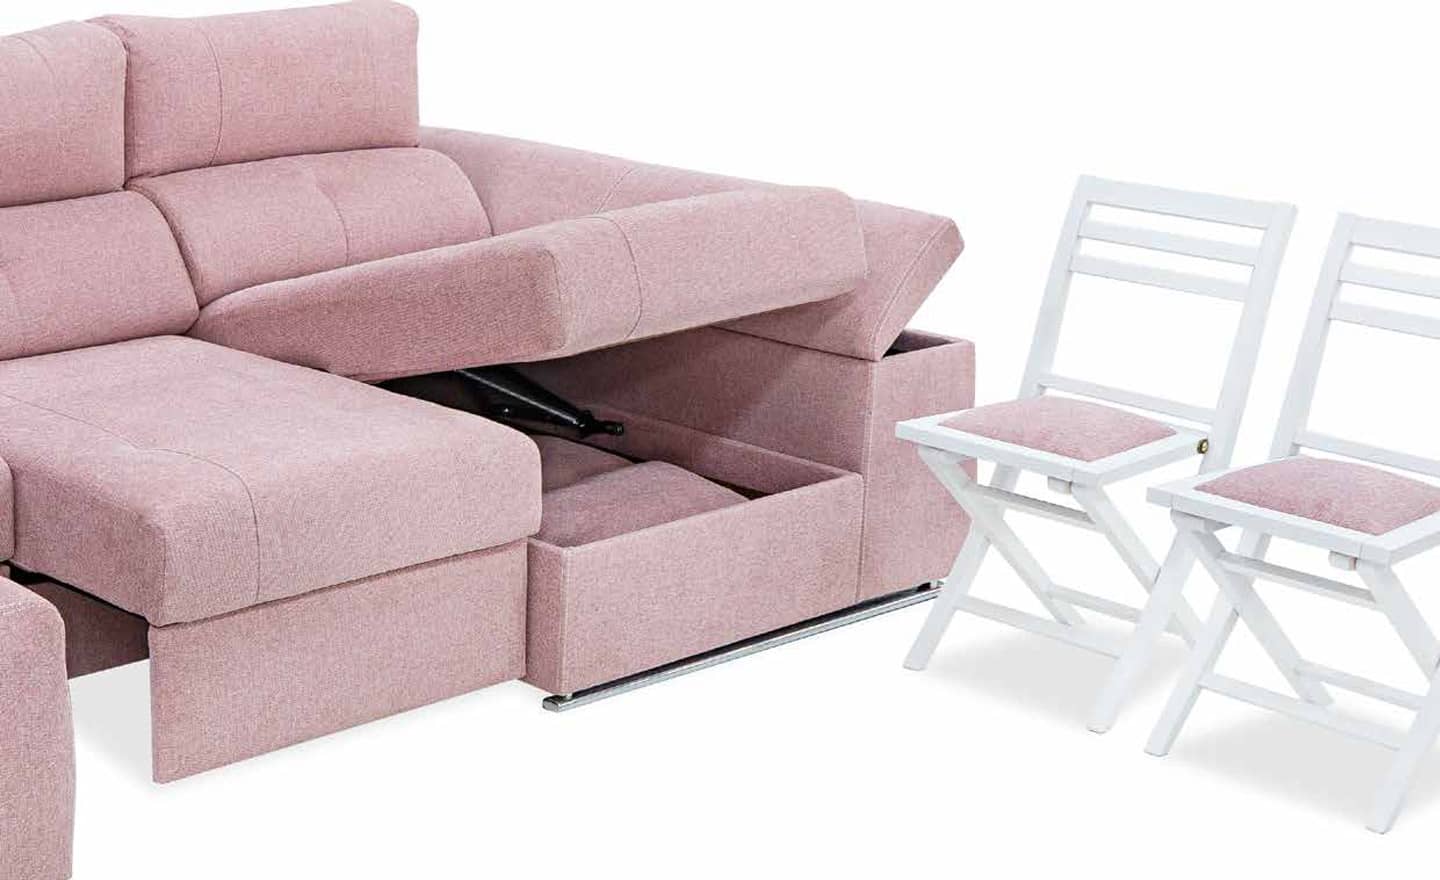 Sofá Chaise Longue Agora - Foto do Produto com chaise longue na cor cinza, encosto reclinável e almofadas decorativas.